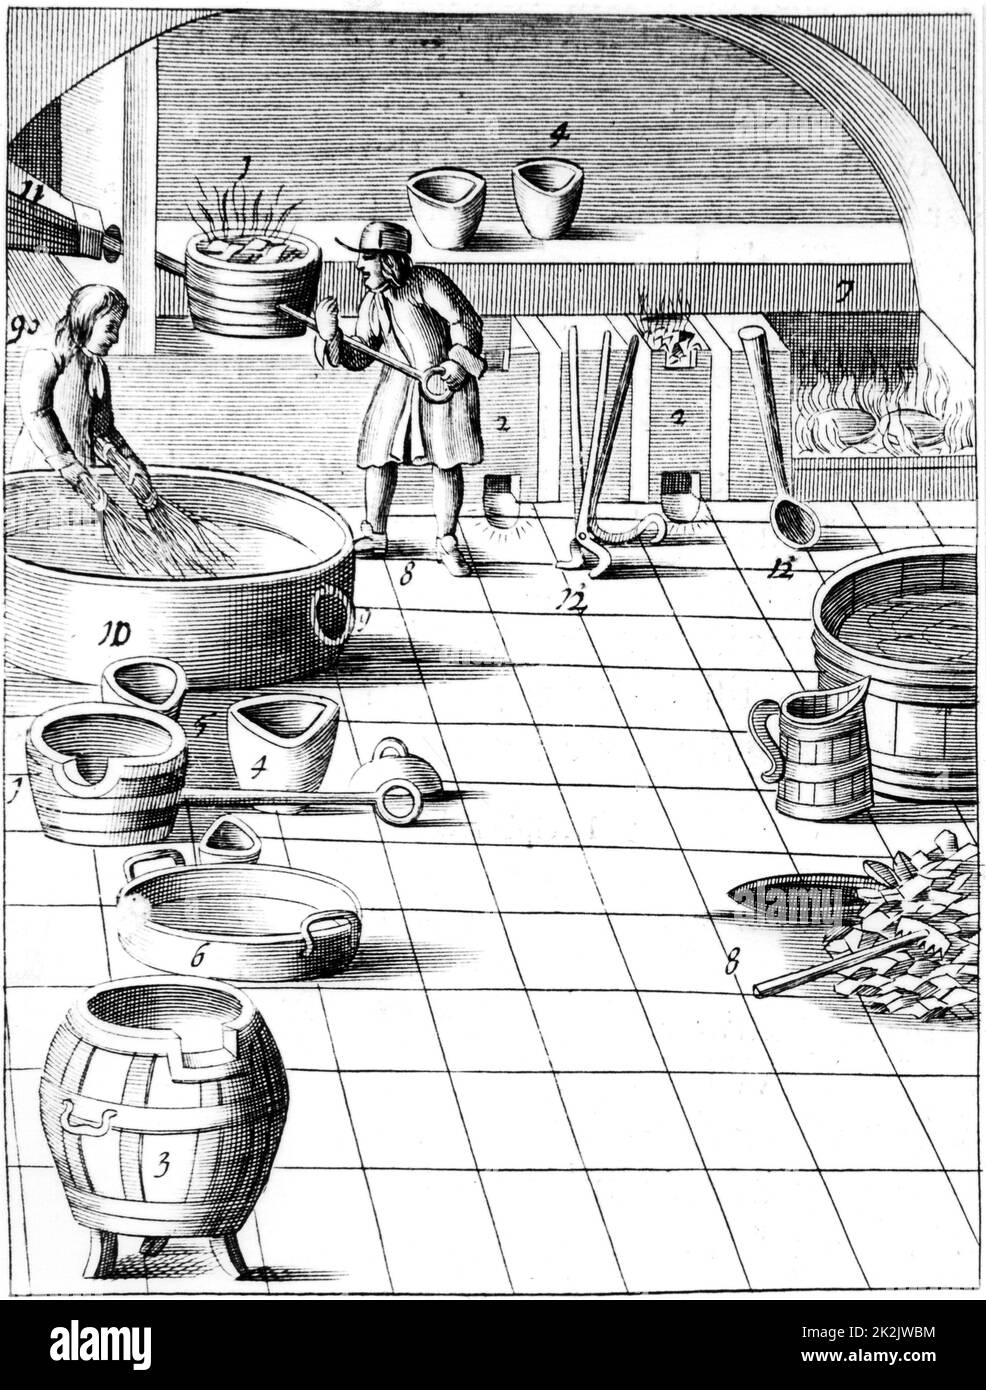 Préparation du cuivre et de l'argent à l'alliage pour la production de pièces. Le cuivre a fondu (1) tandis que l'apprenti (9) a tremper les brindilles de bouleau dans l'eau. Lorsque le cuivre est versé sur les brindilles, il forme des grains. Il est alors prêt à être allié avec l'argent chauffé à (7). A partir de 1683 édition anglaise de Beschreibung allerfurneremisten mineralischen Ertzt par Lazarus Ercker, publié pour la première fois en 1580. Banque D'Images